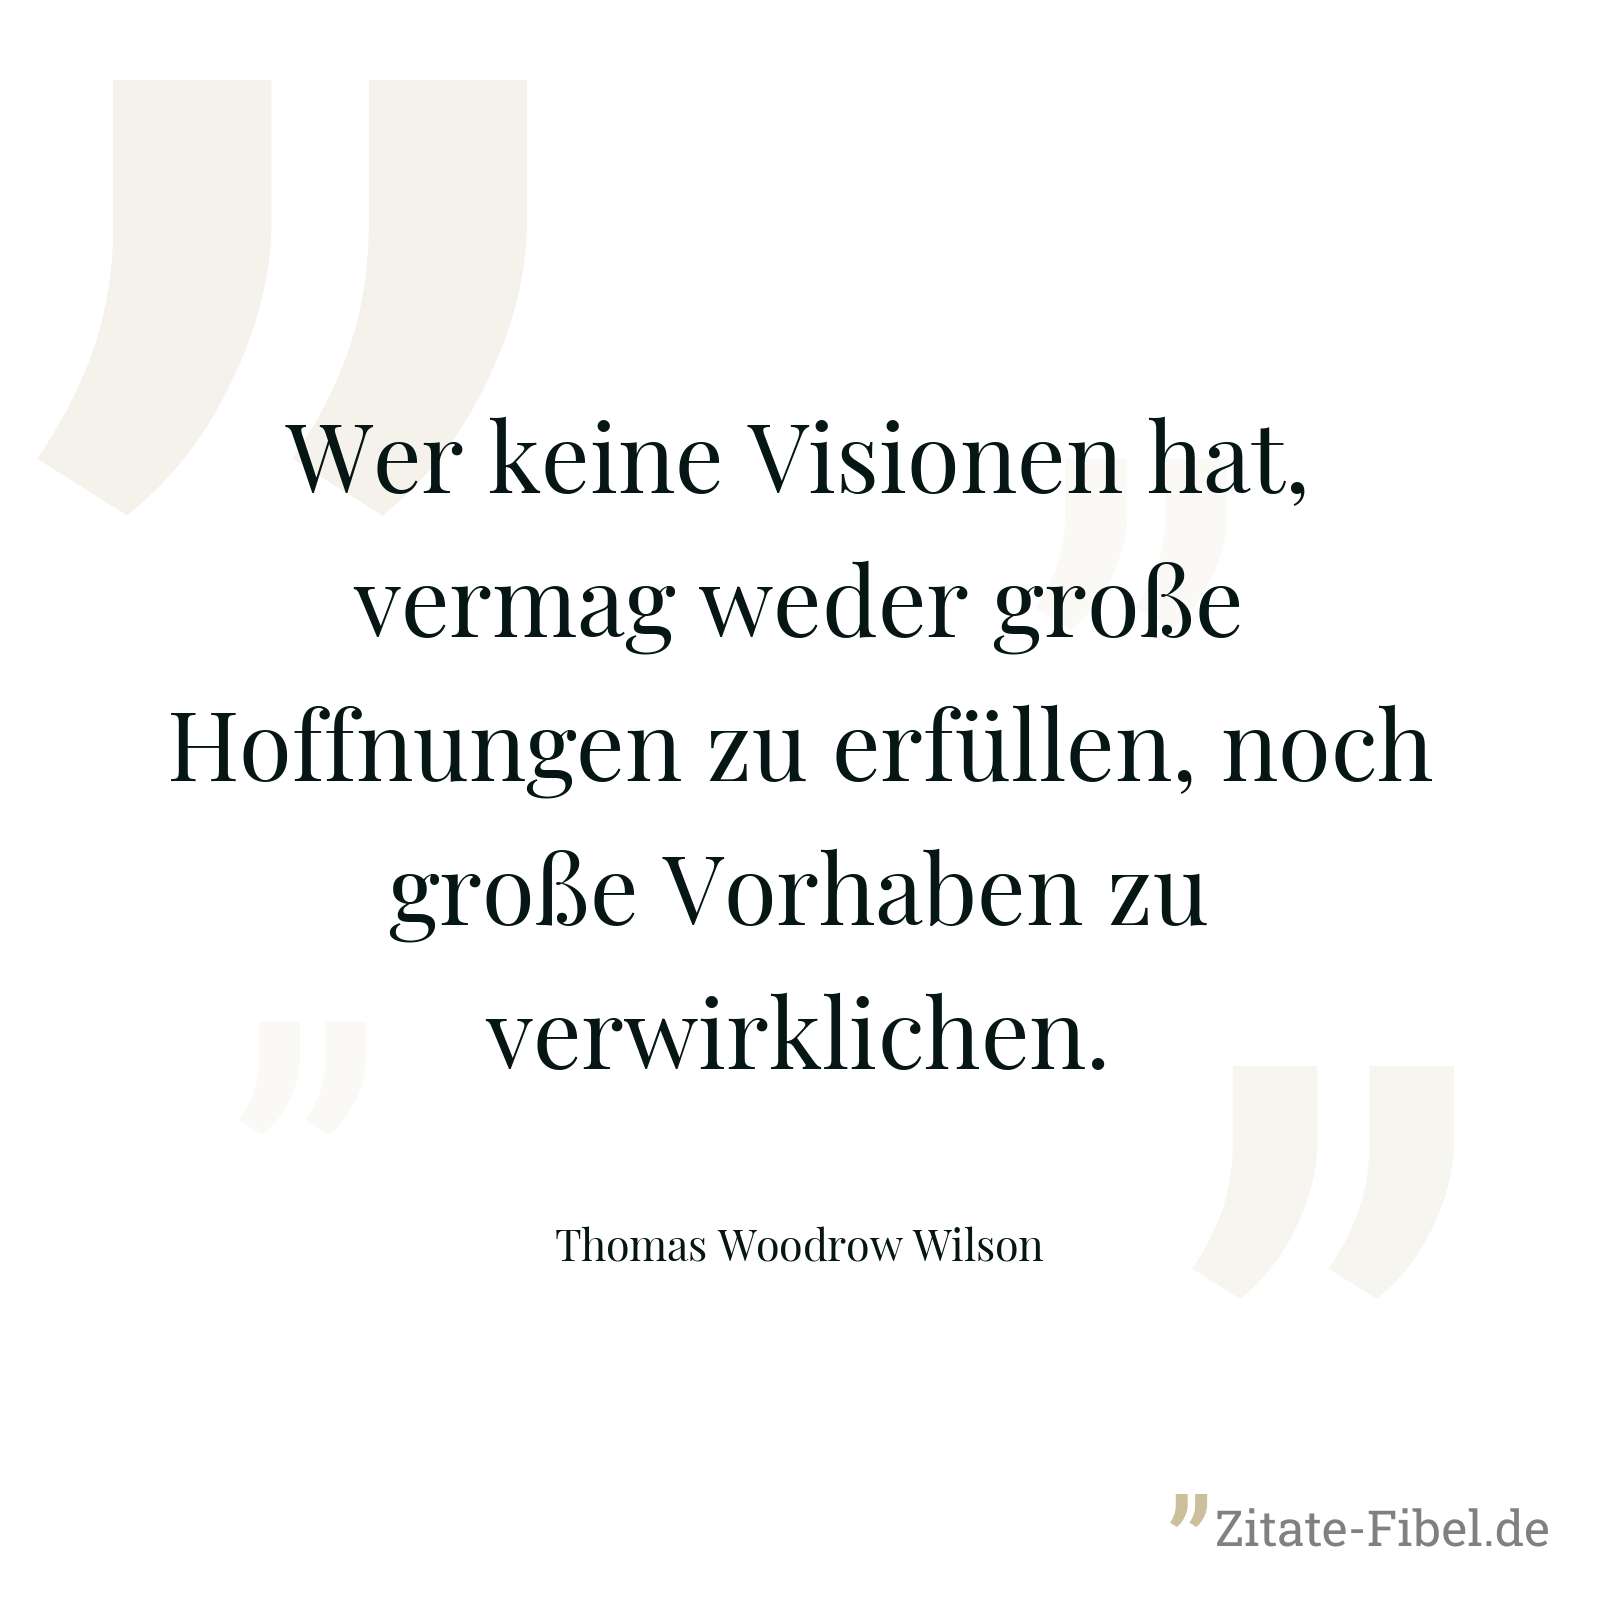 Wer keine Visionen hat, vermag weder große Hoffnungen zu erfüllen, noch große Vorhaben zu verwirklichen. - Thomas Woodrow Wilson